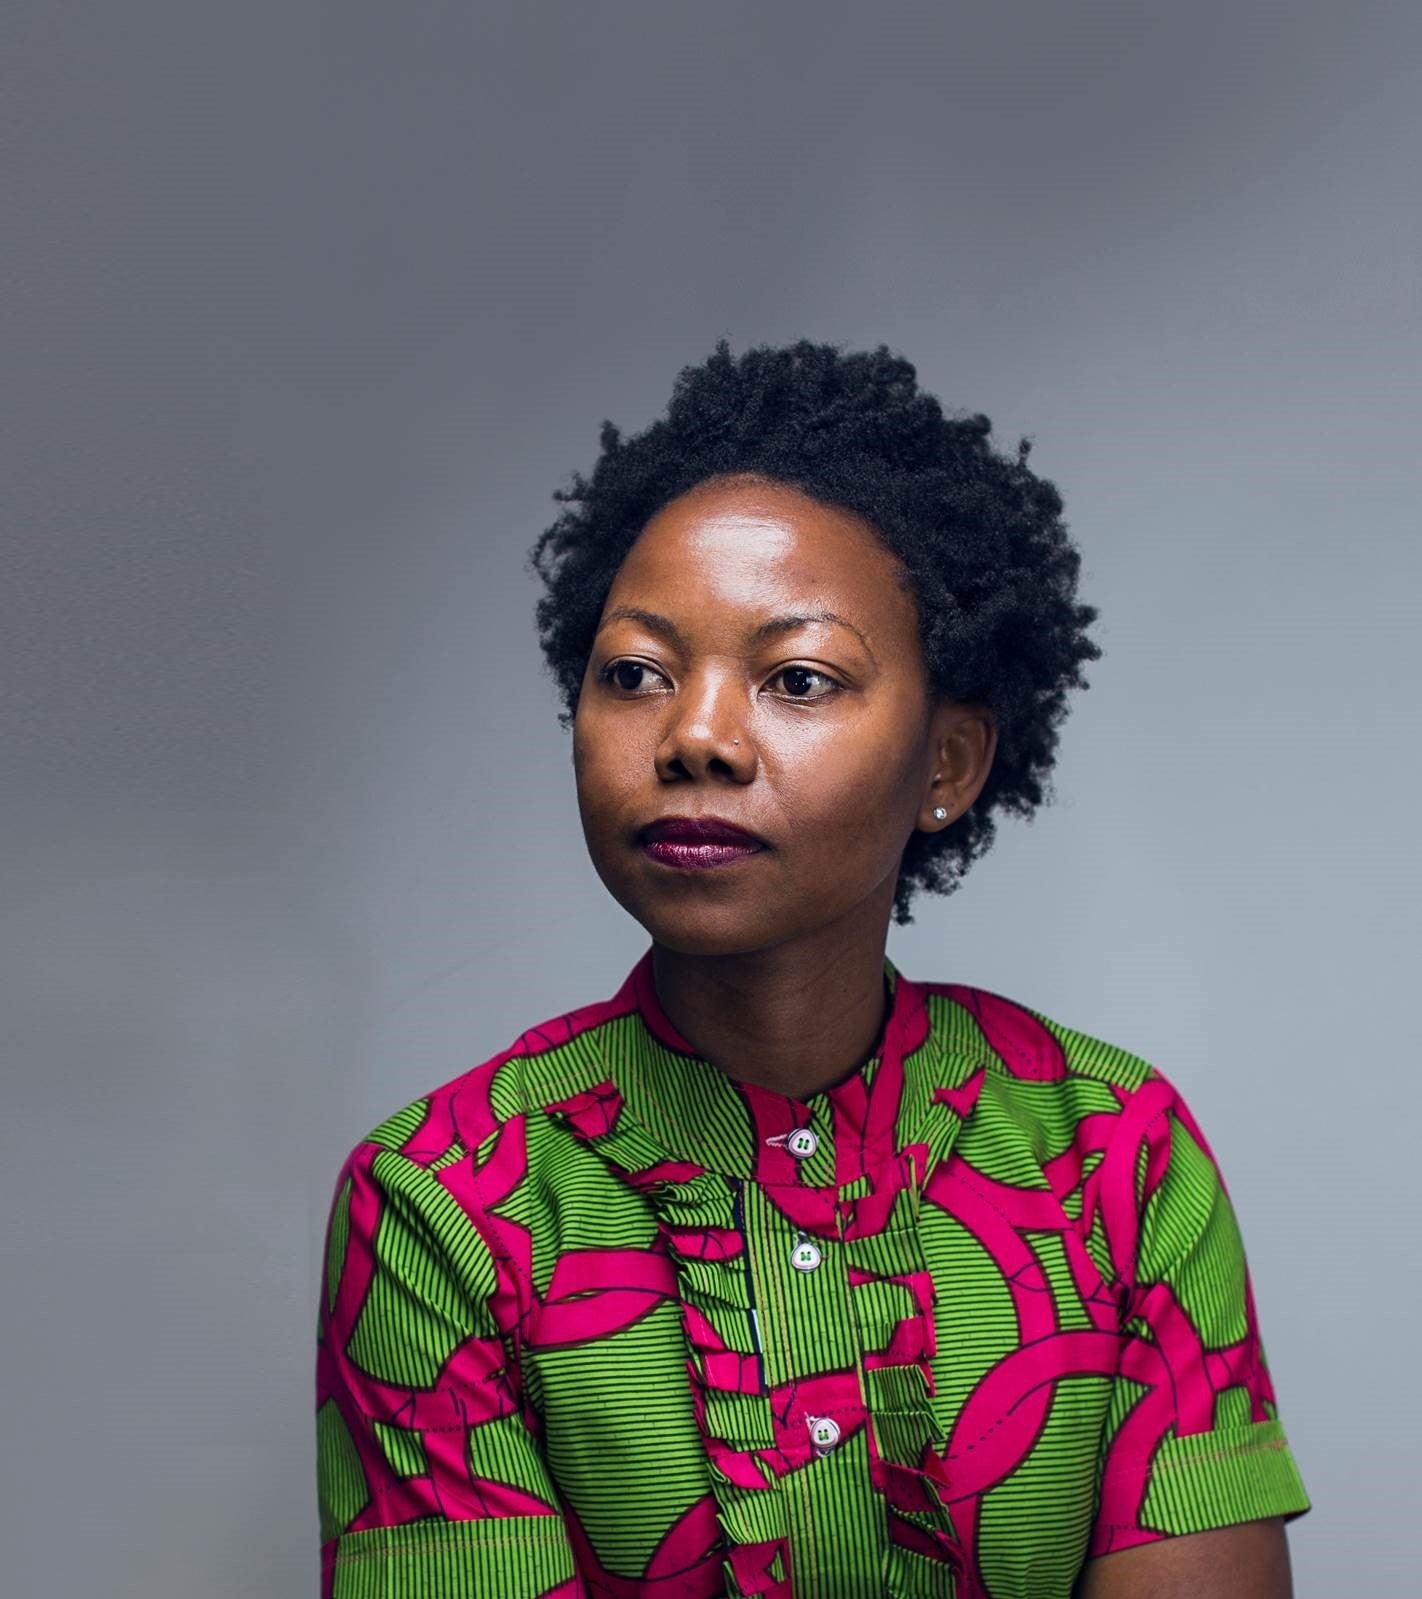 NoViolet Bulawayo makes the shortlist with her novel Glory (c) NyeLynTho.